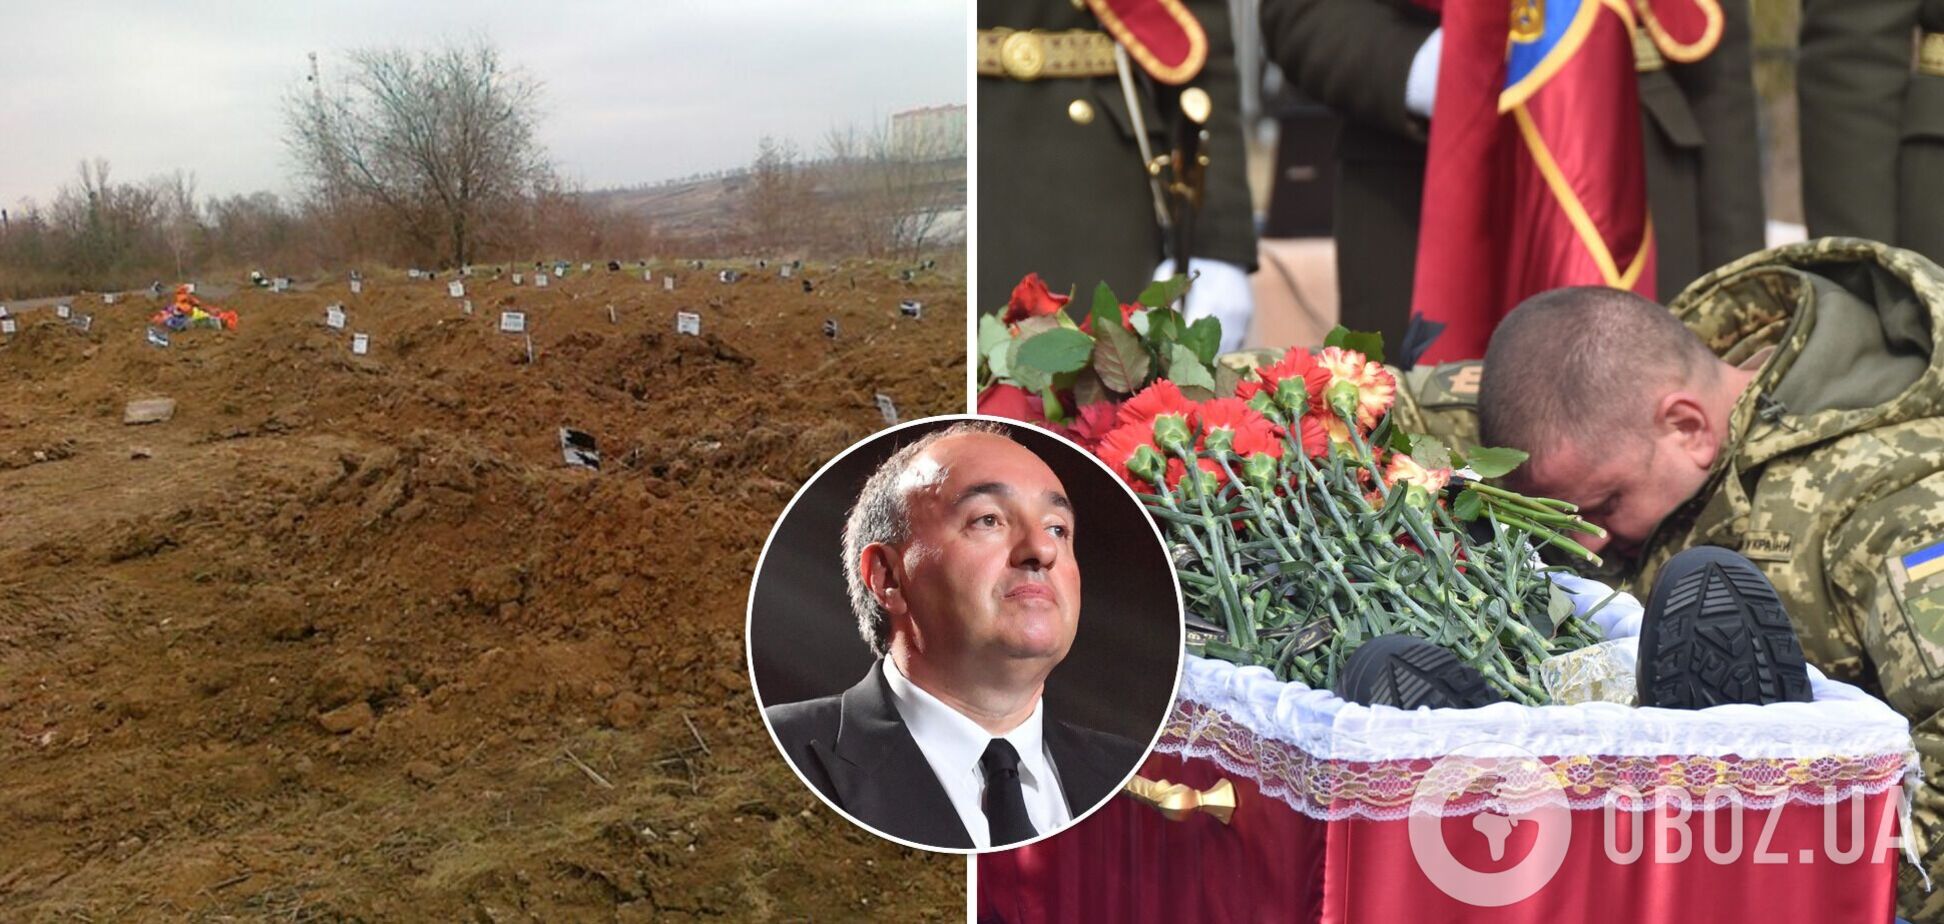 Роднянський показав на фото гігантську прірву між загиблими окупантами і воїнами, які гинуть за Україну